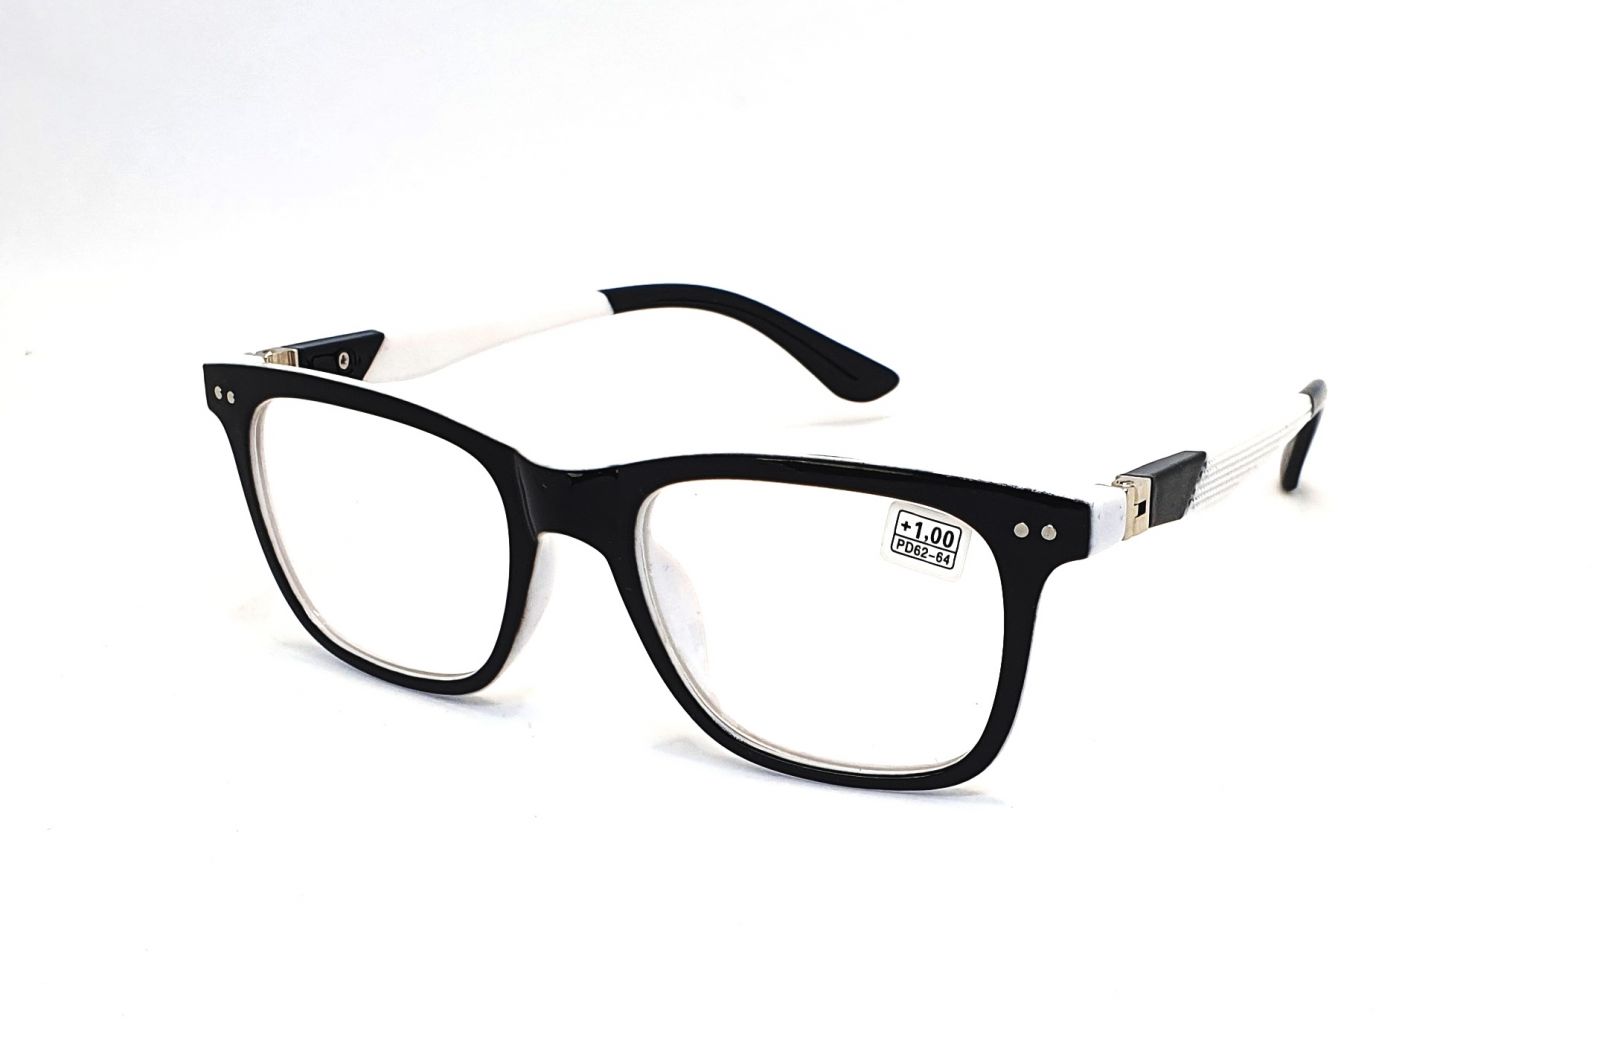 Dioptrické brýle CH8805 +2,50 black/white flex